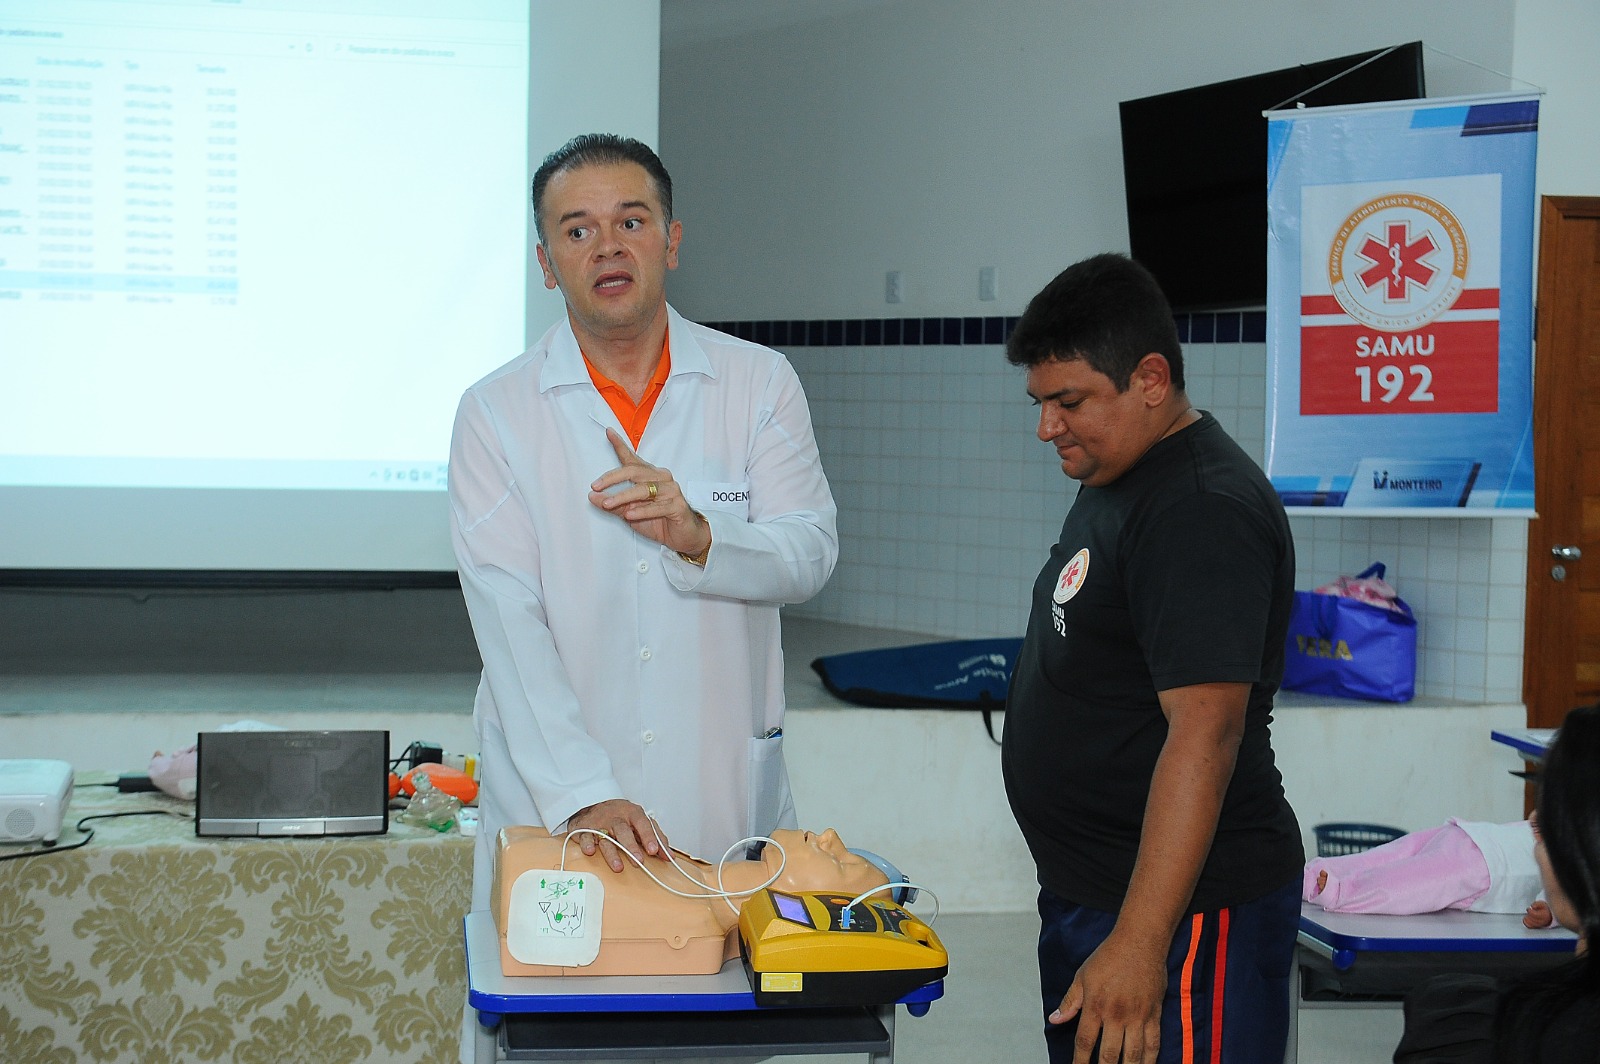 Curso-Do-Samu-2 Samu de Monteiro realiza Workshop em Emergência Pediátrica para profissionais de saúde do município e região